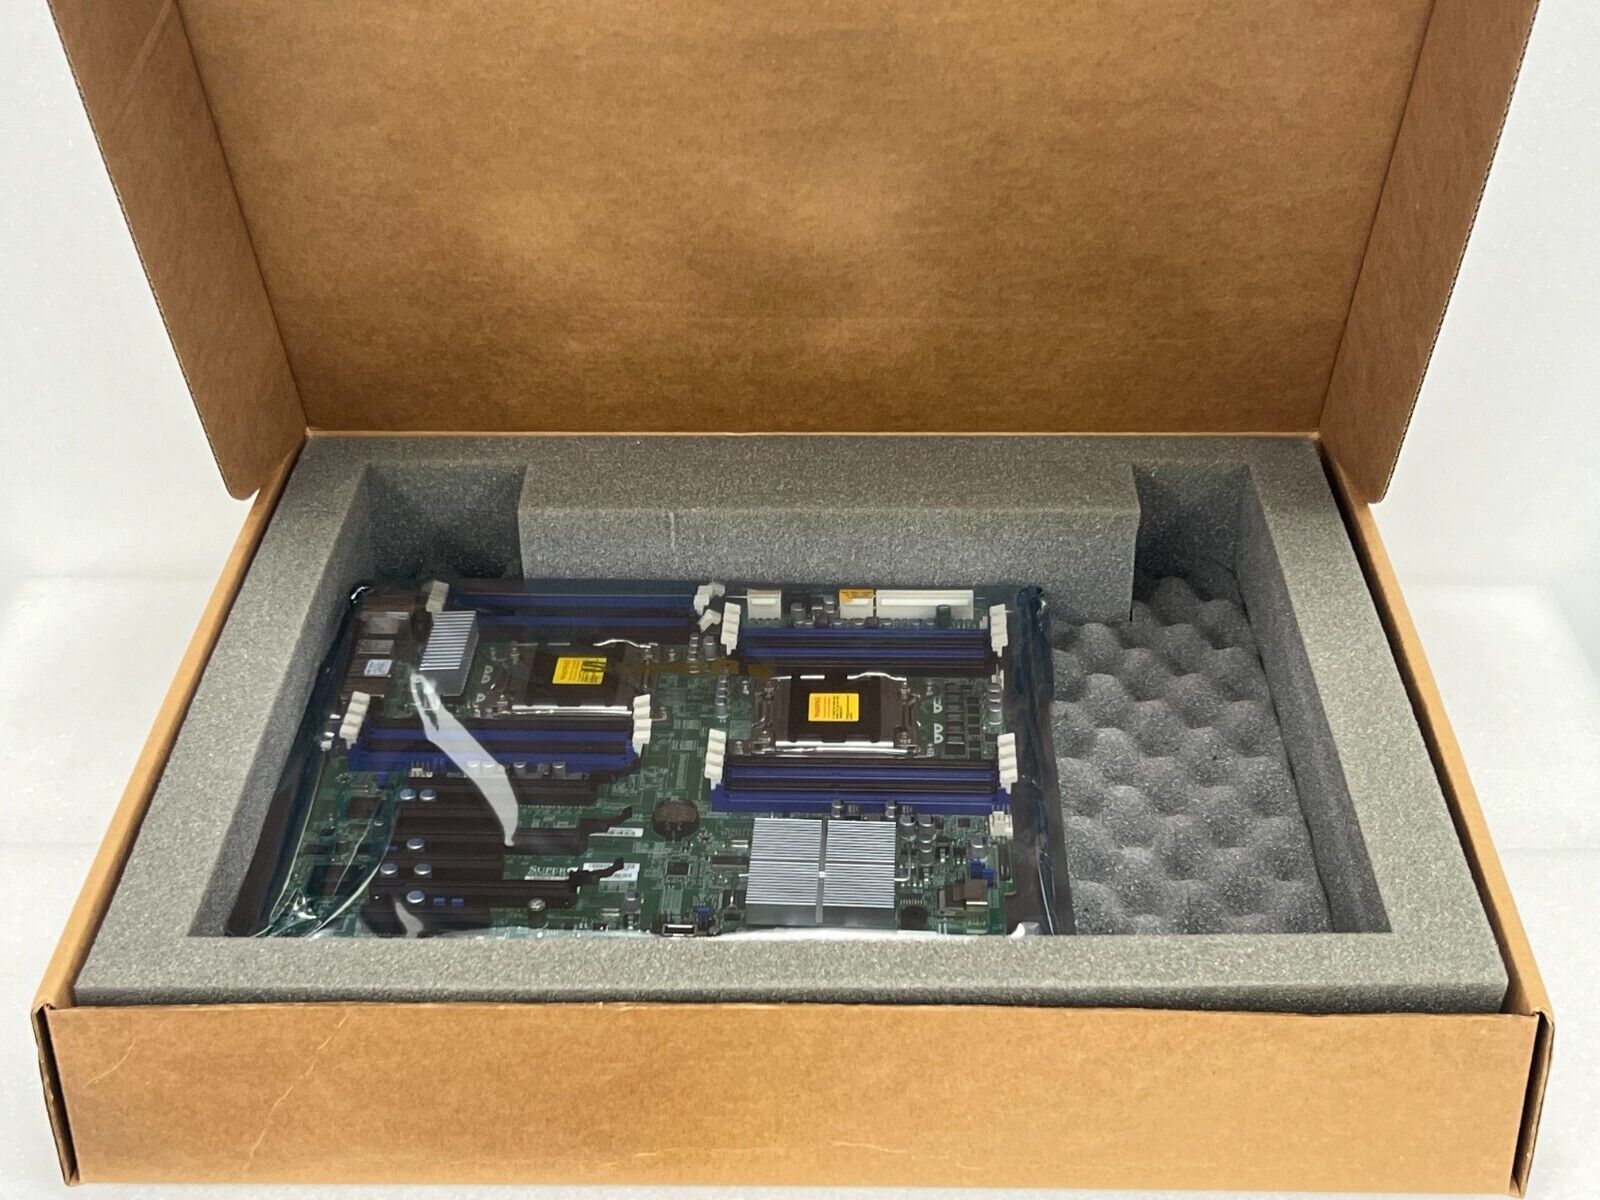 New Open box Supermicro X9DRI-F DUAL LGA2011 ATX Server Motherboard No IO Shield